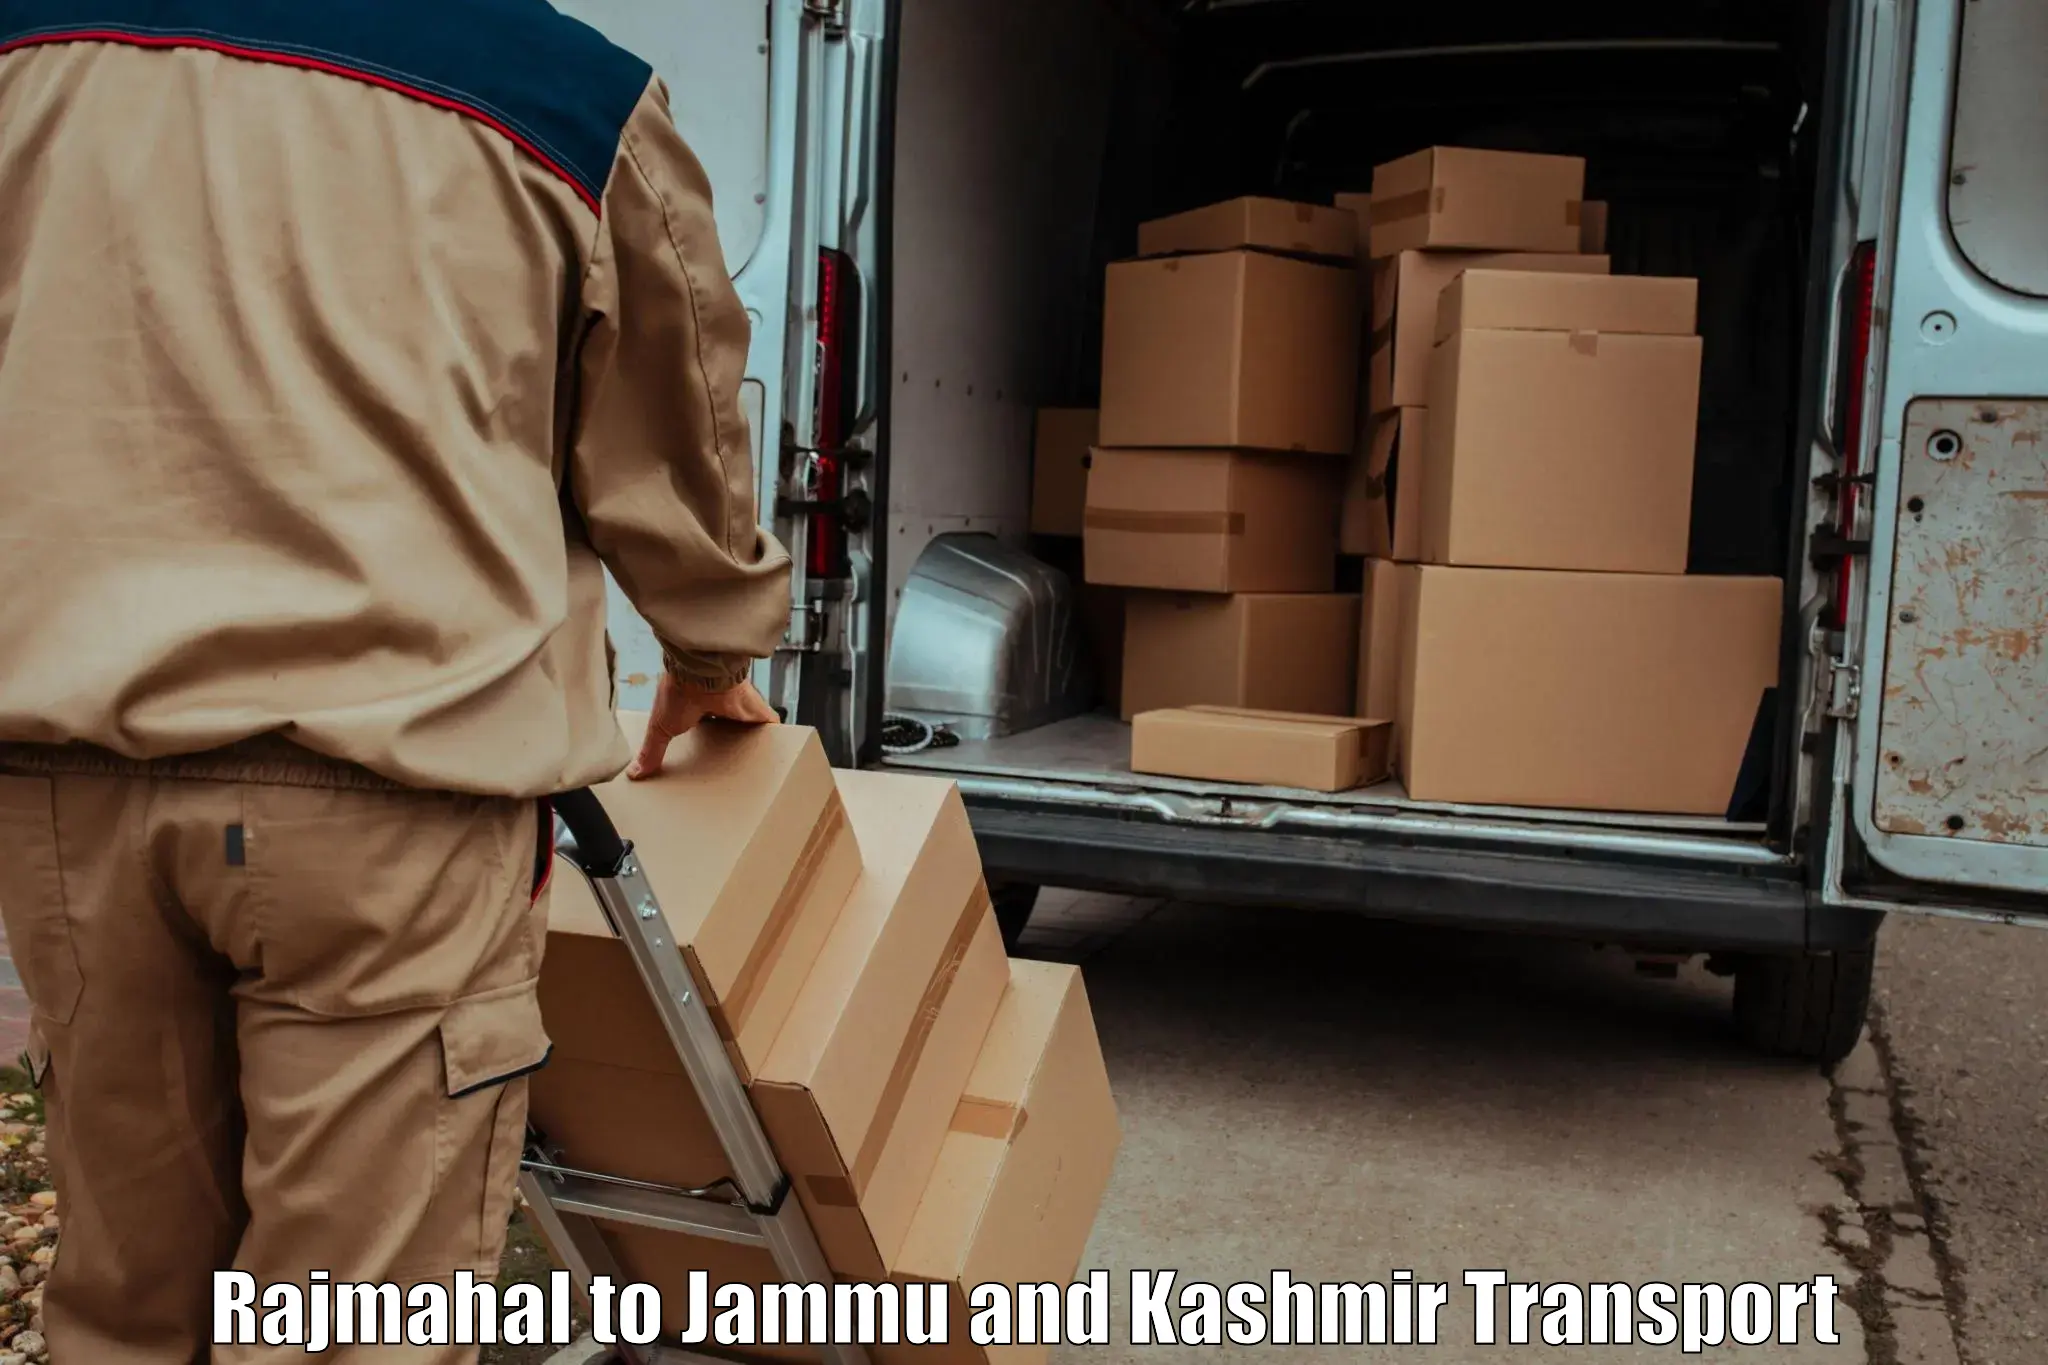 Daily transport service Rajmahal to Jammu